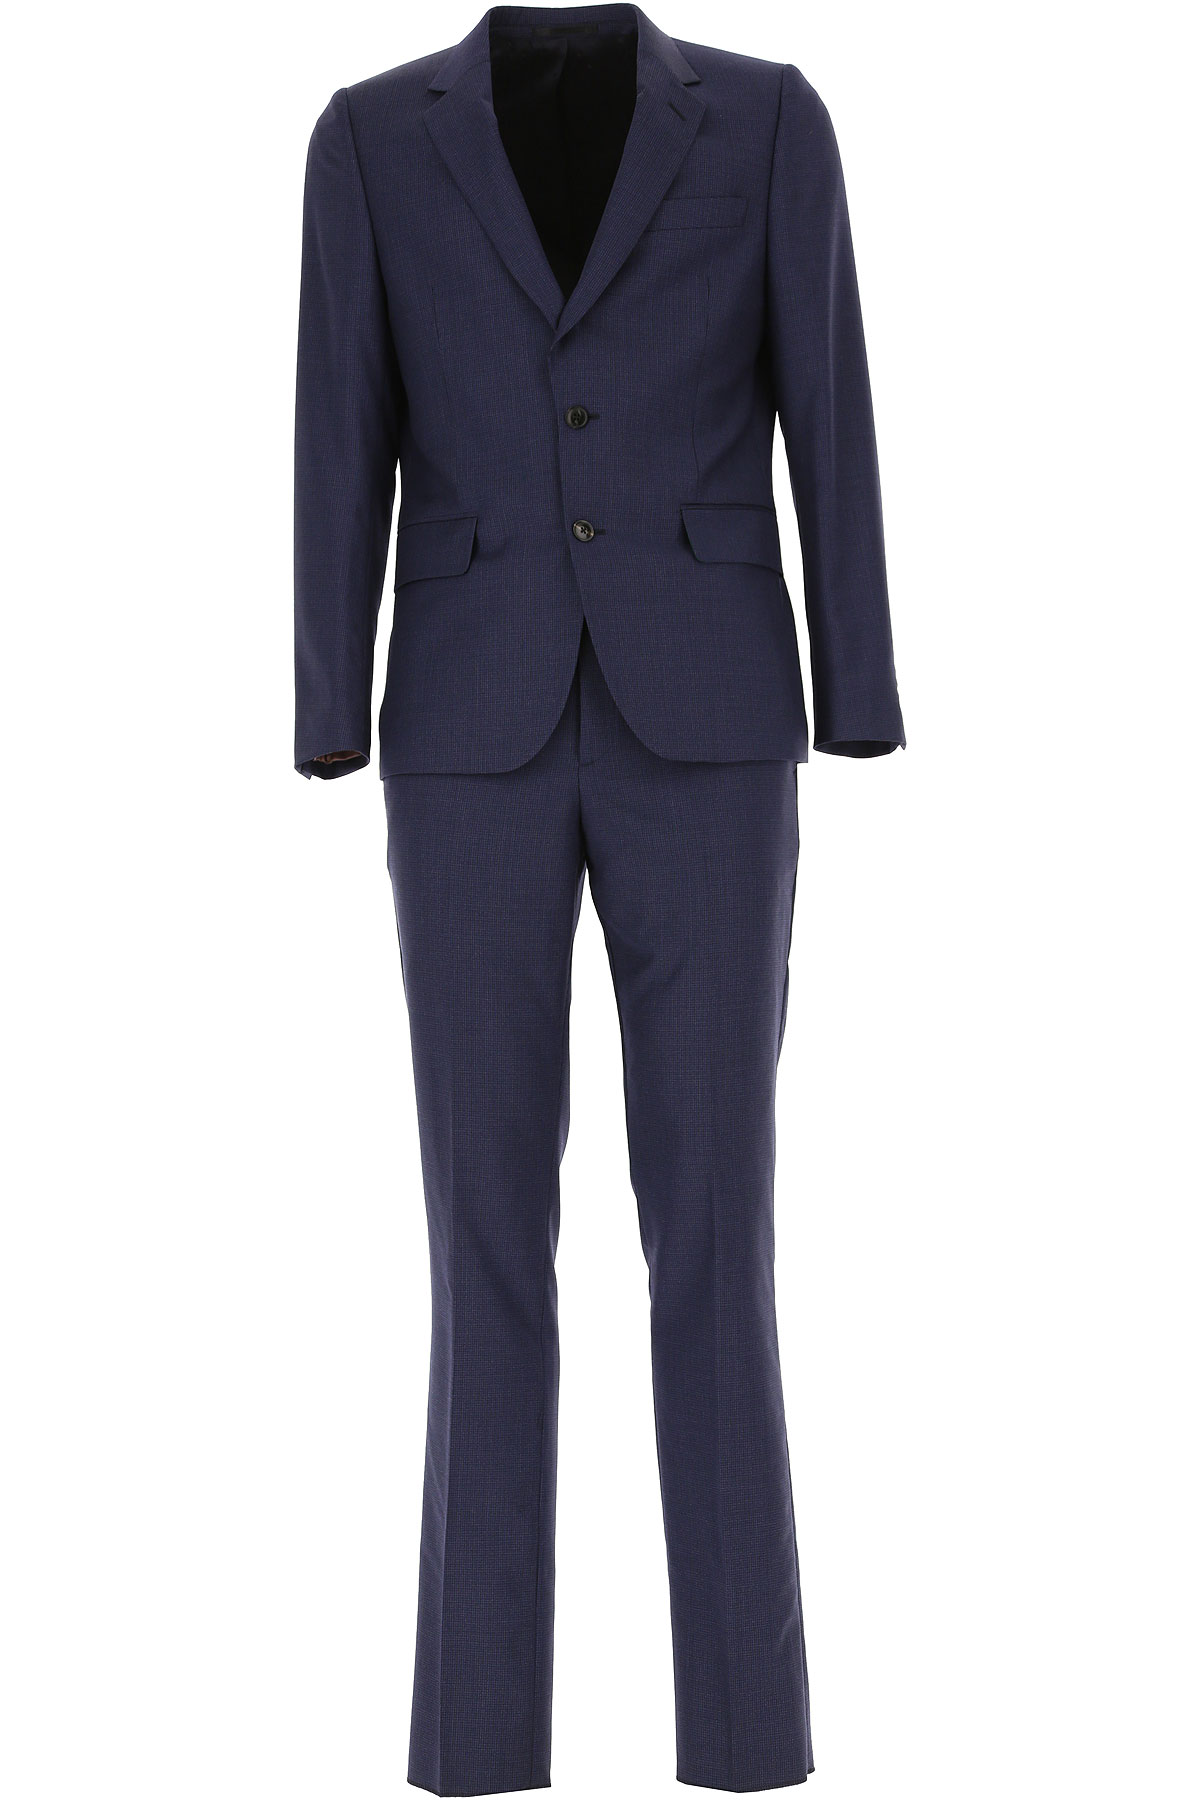 Paul Smith Anzug für Herren Günstig im Sale, Nachtblau, Wolle, 2017, L M